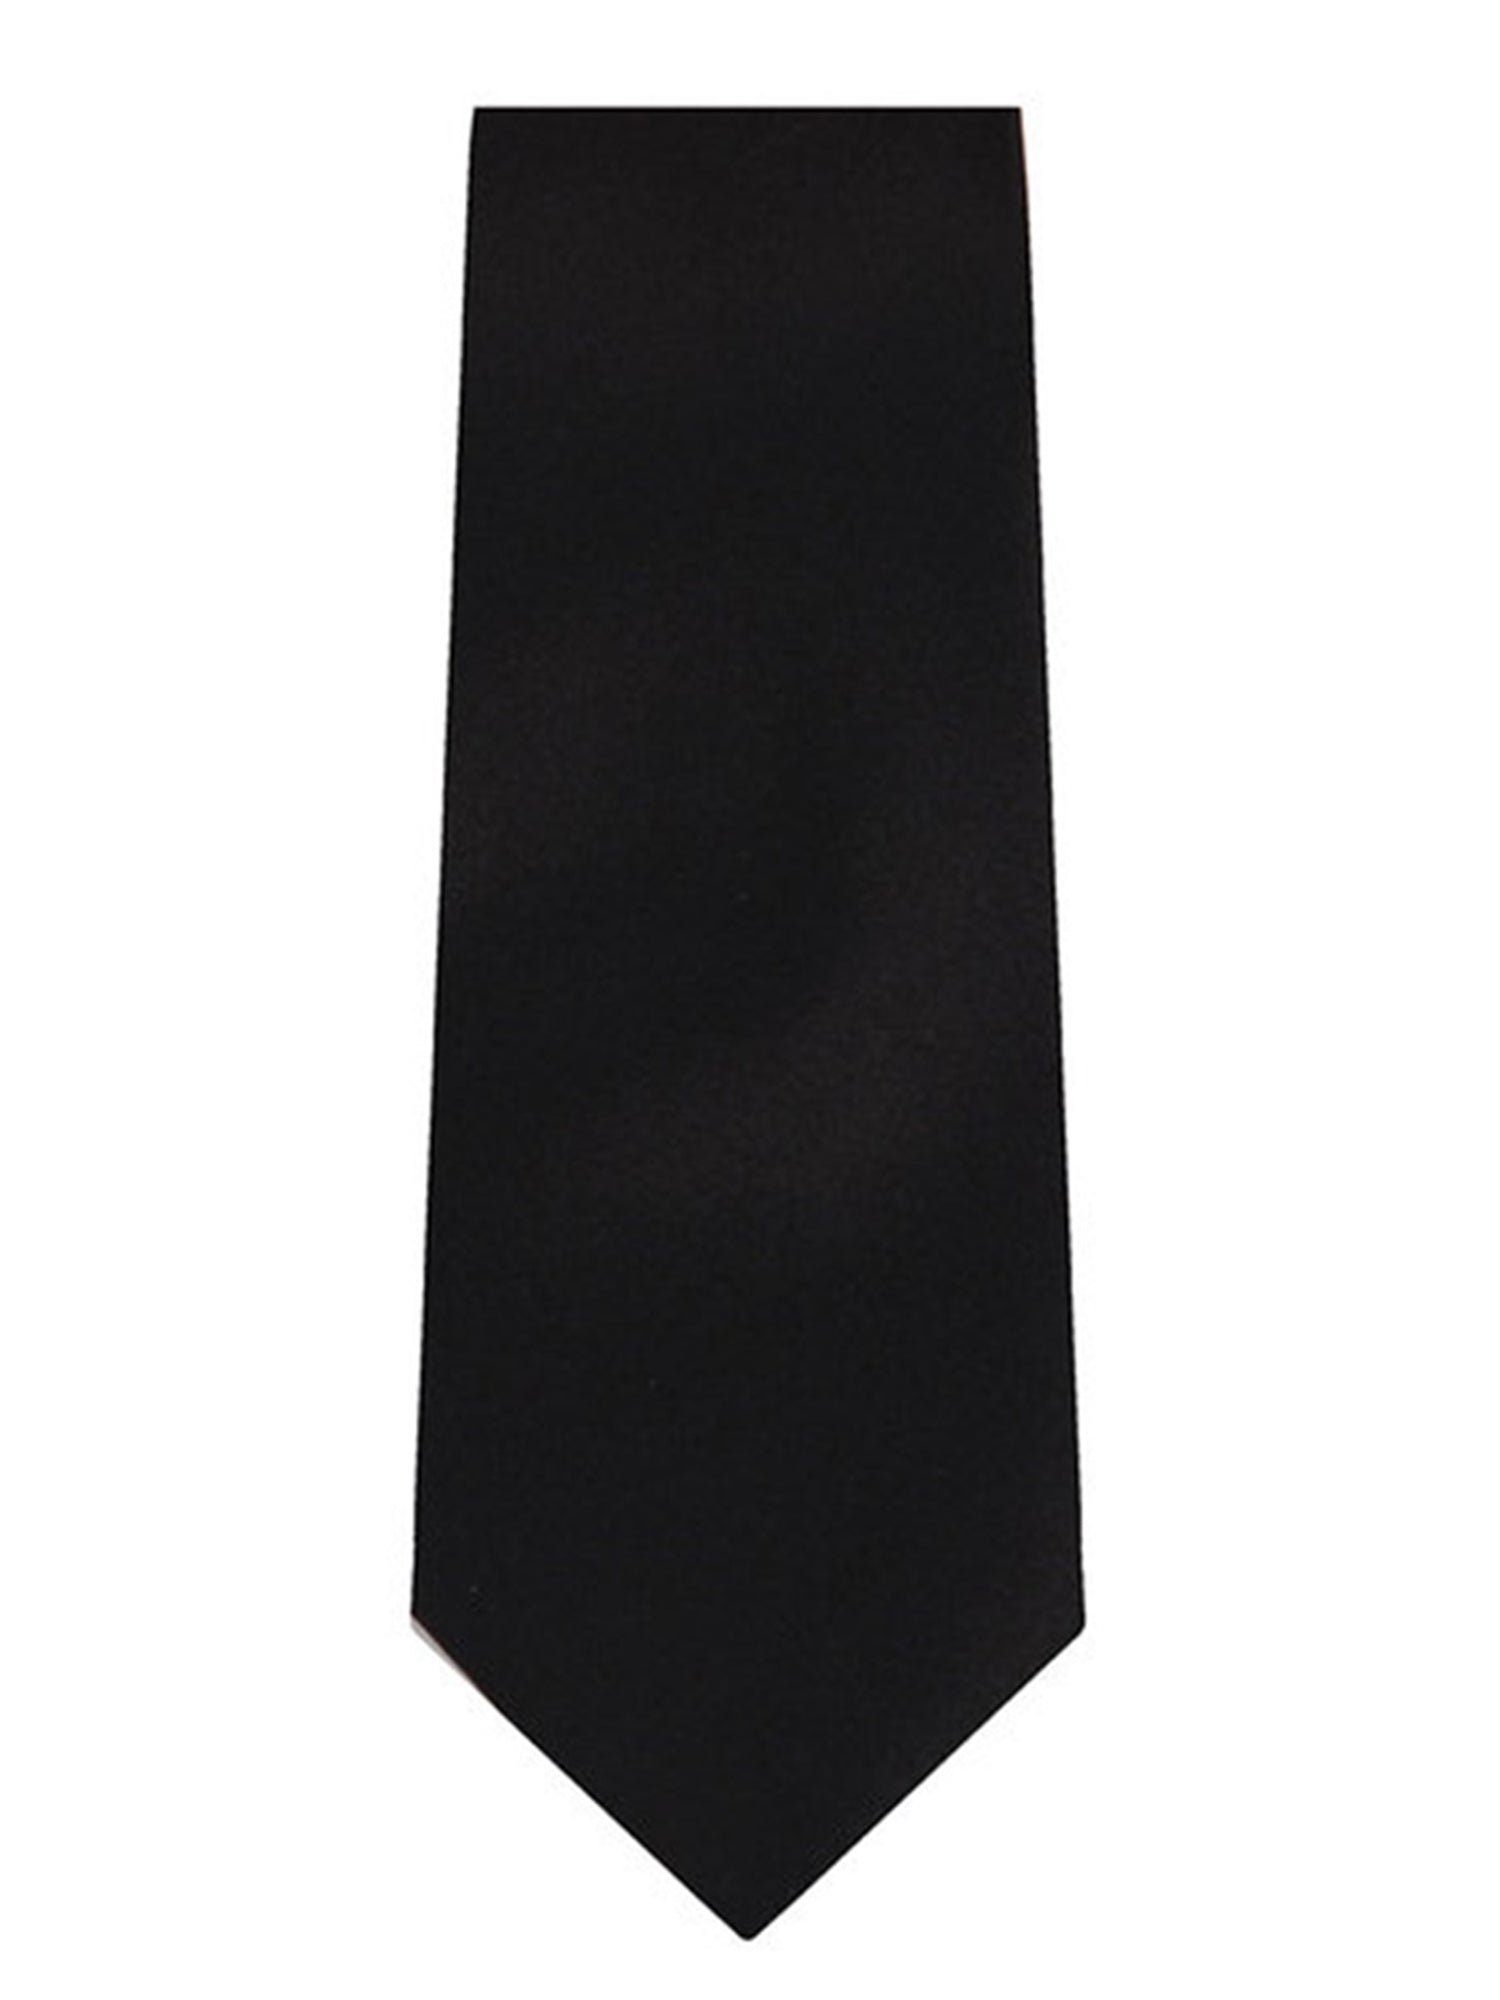 Marquis Men's Solid Slim Neck Tie & Hanky Set Neck Ties TheDapperTie Black One Size 